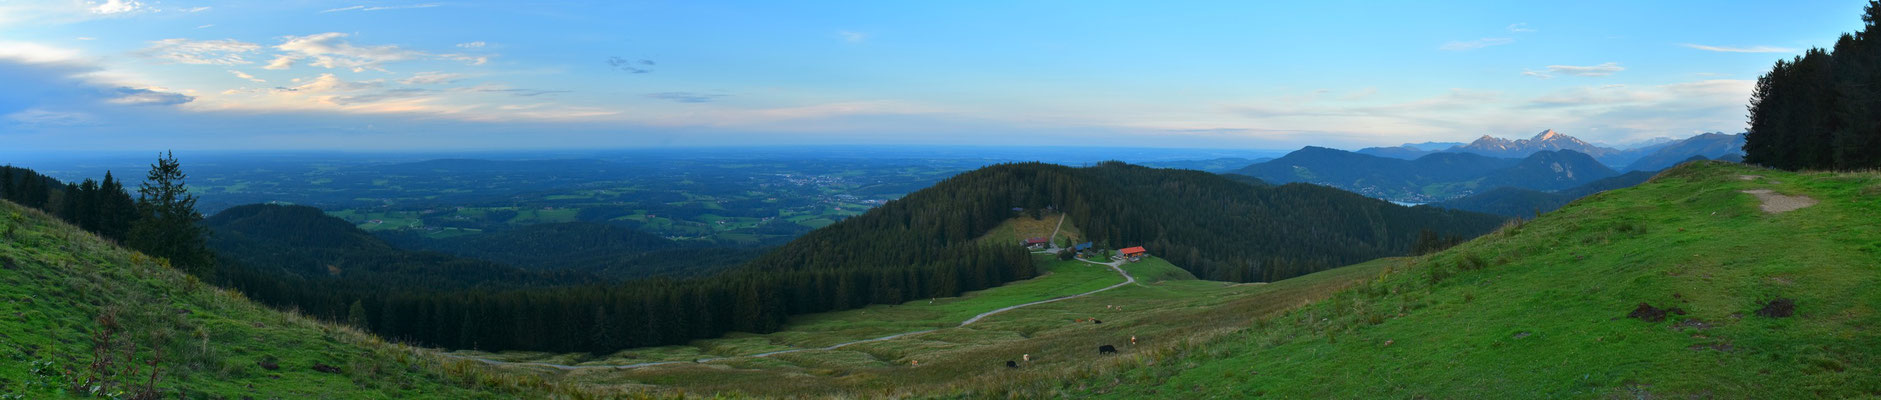 Panorama,Drohnenfoto,  Gindelalm, Gindelalmschneid, Tegernsee, Alpen, Berge, Wiese, Wald